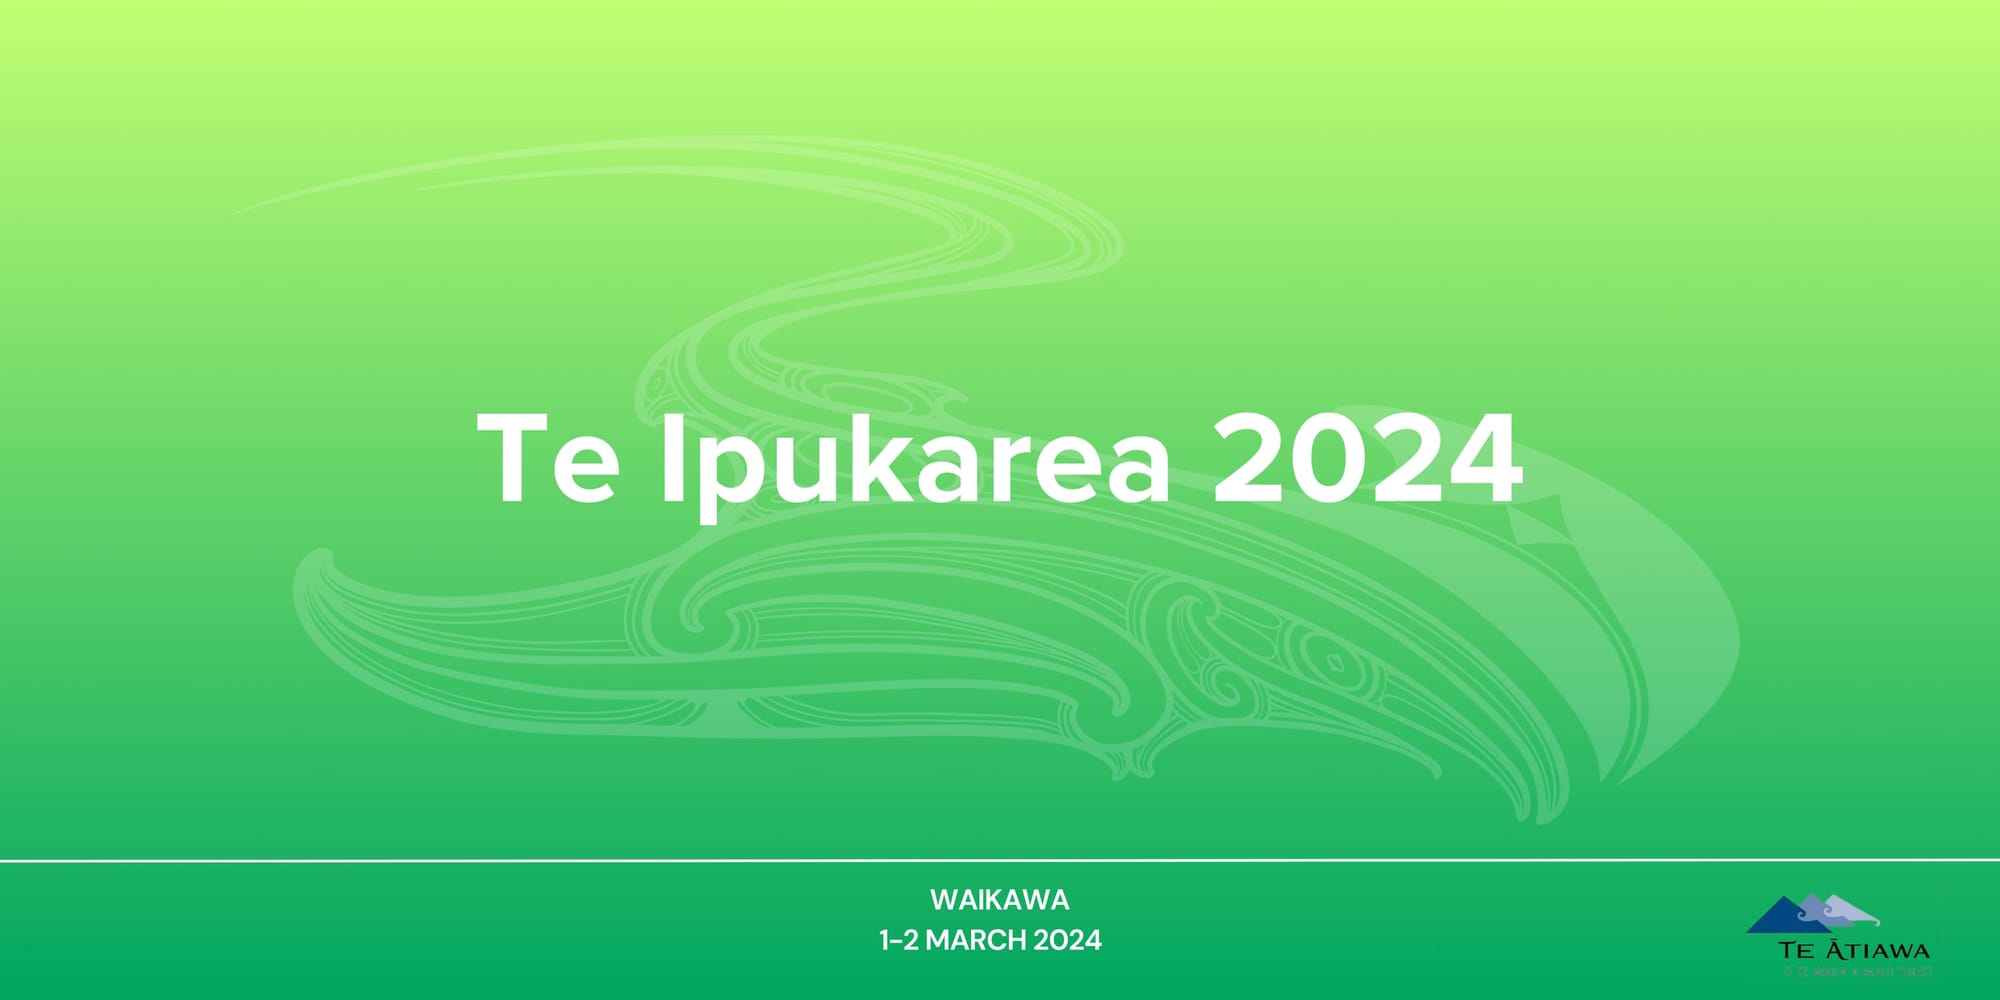 Register now for Te Ipukarea 2024